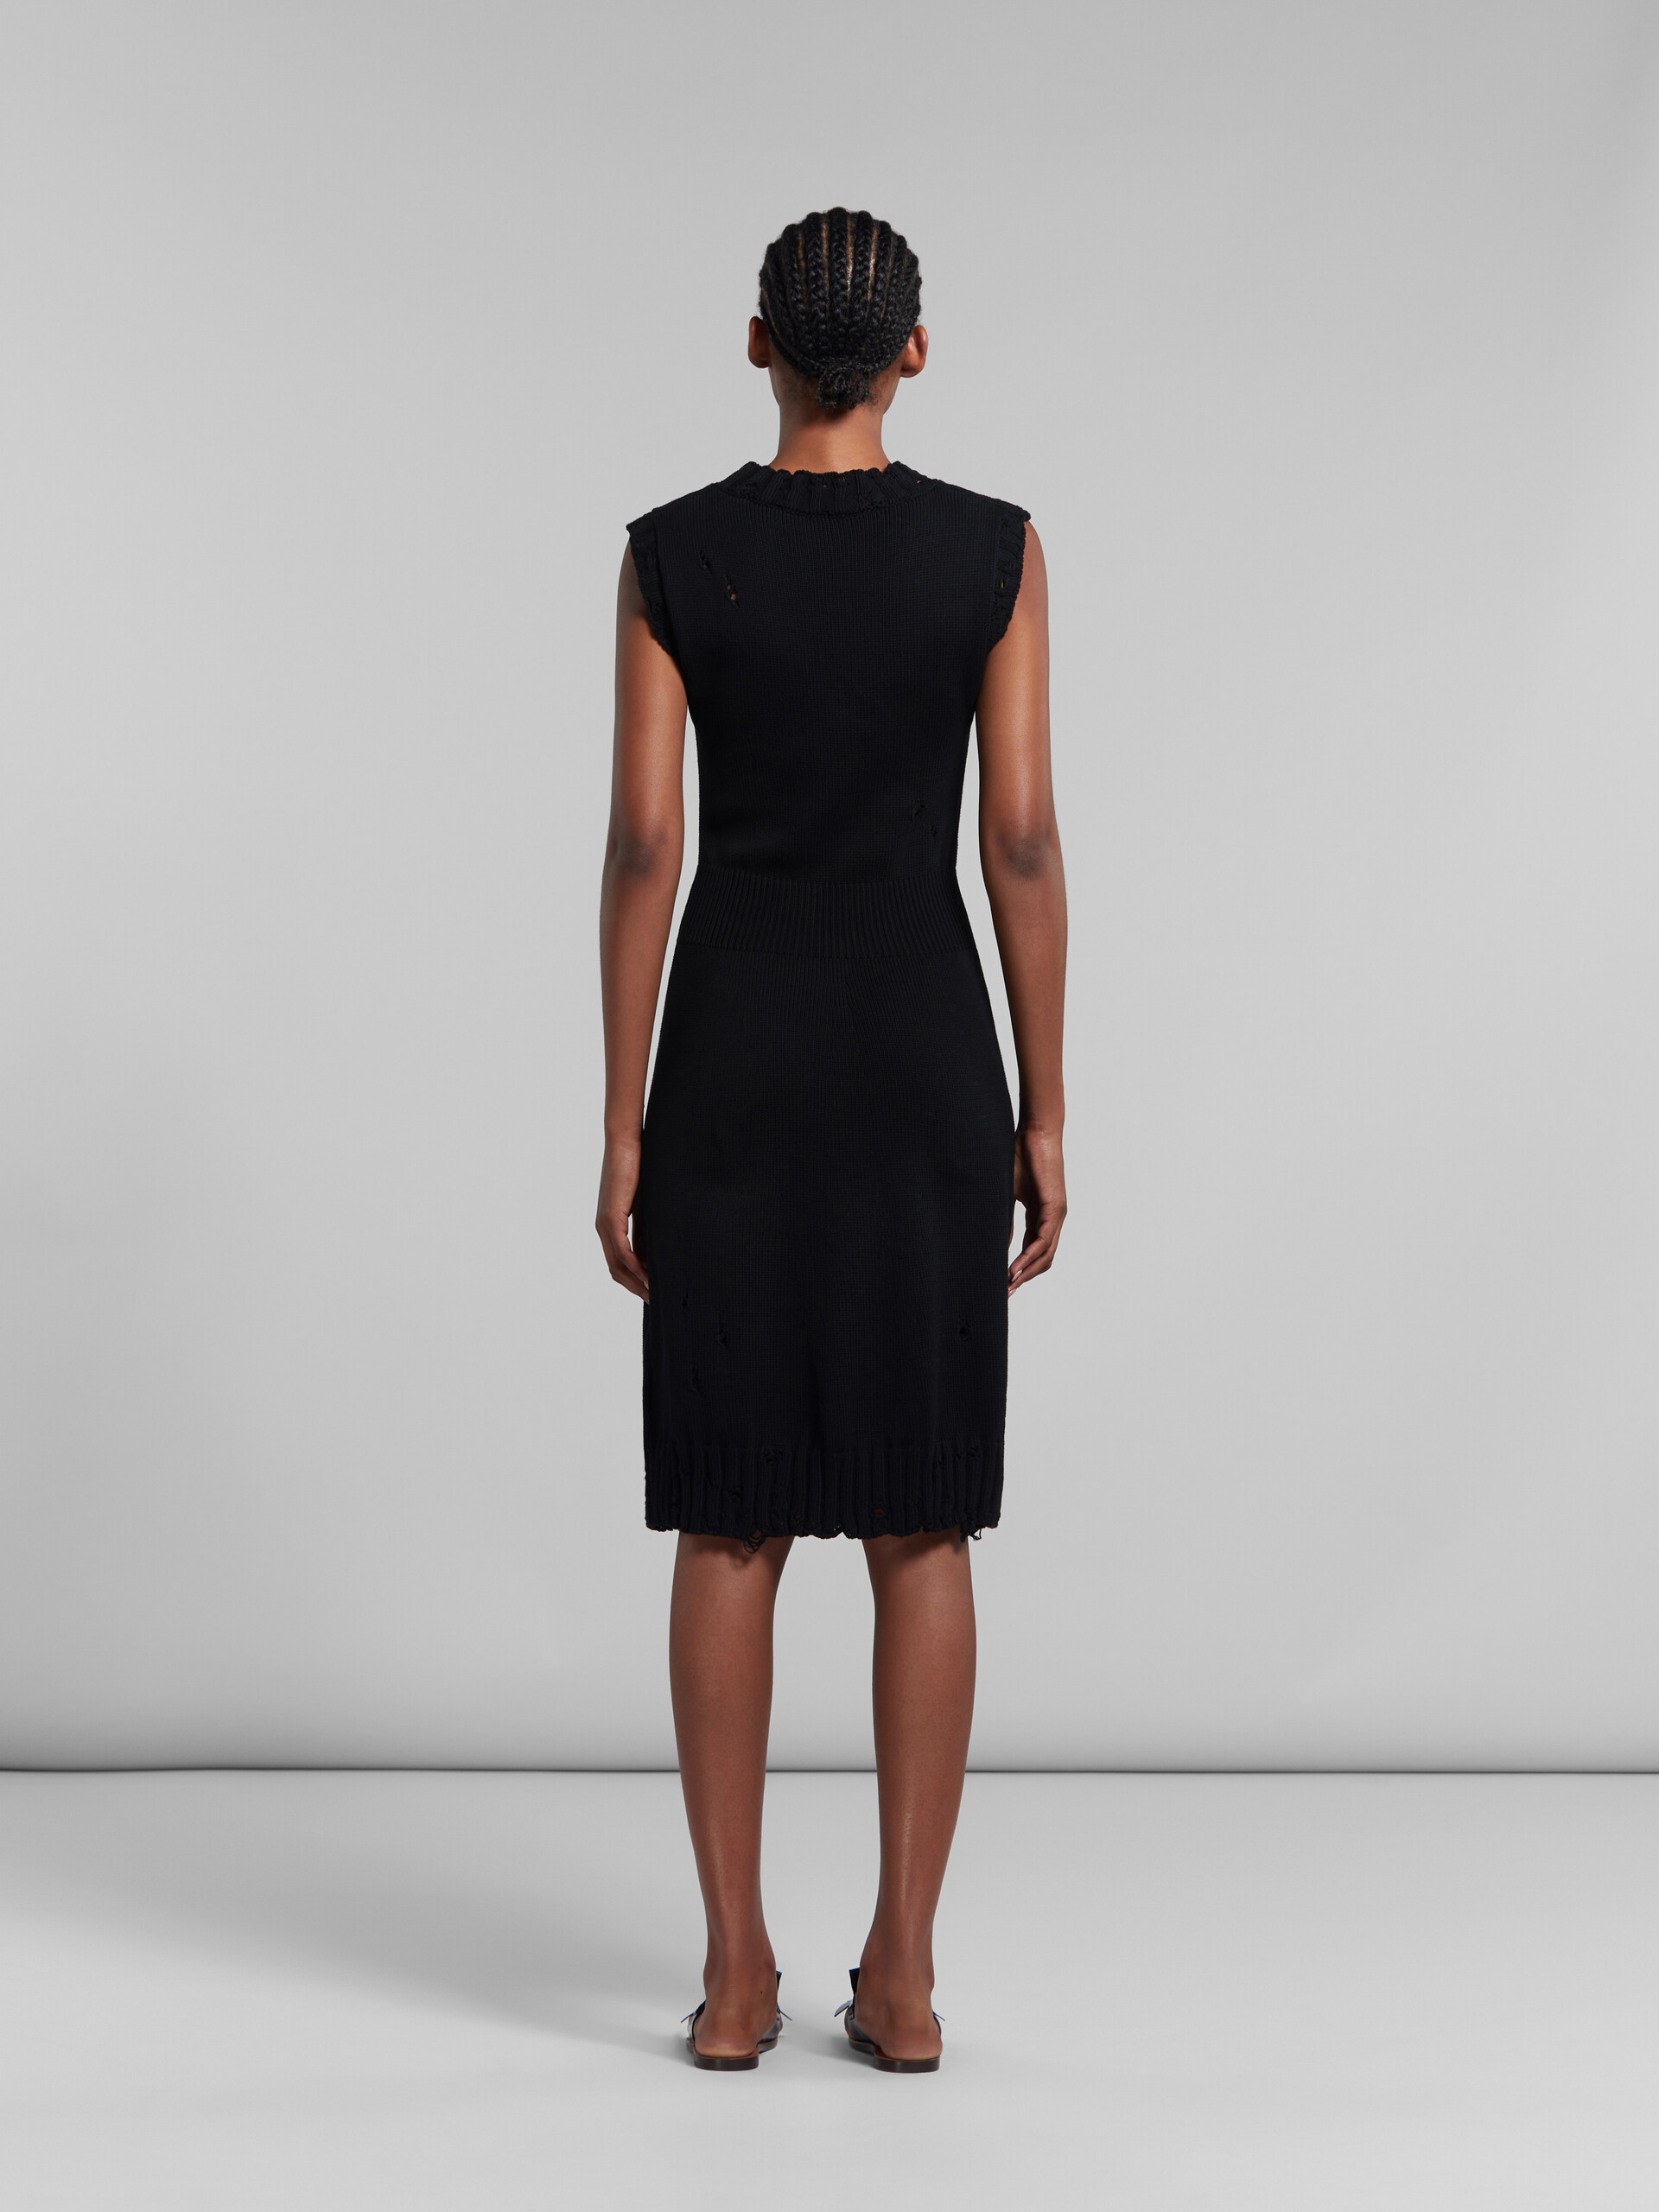 흐트러진 스타일의 블랙 코튼 니트 드레스 - 드레스 - Image 3